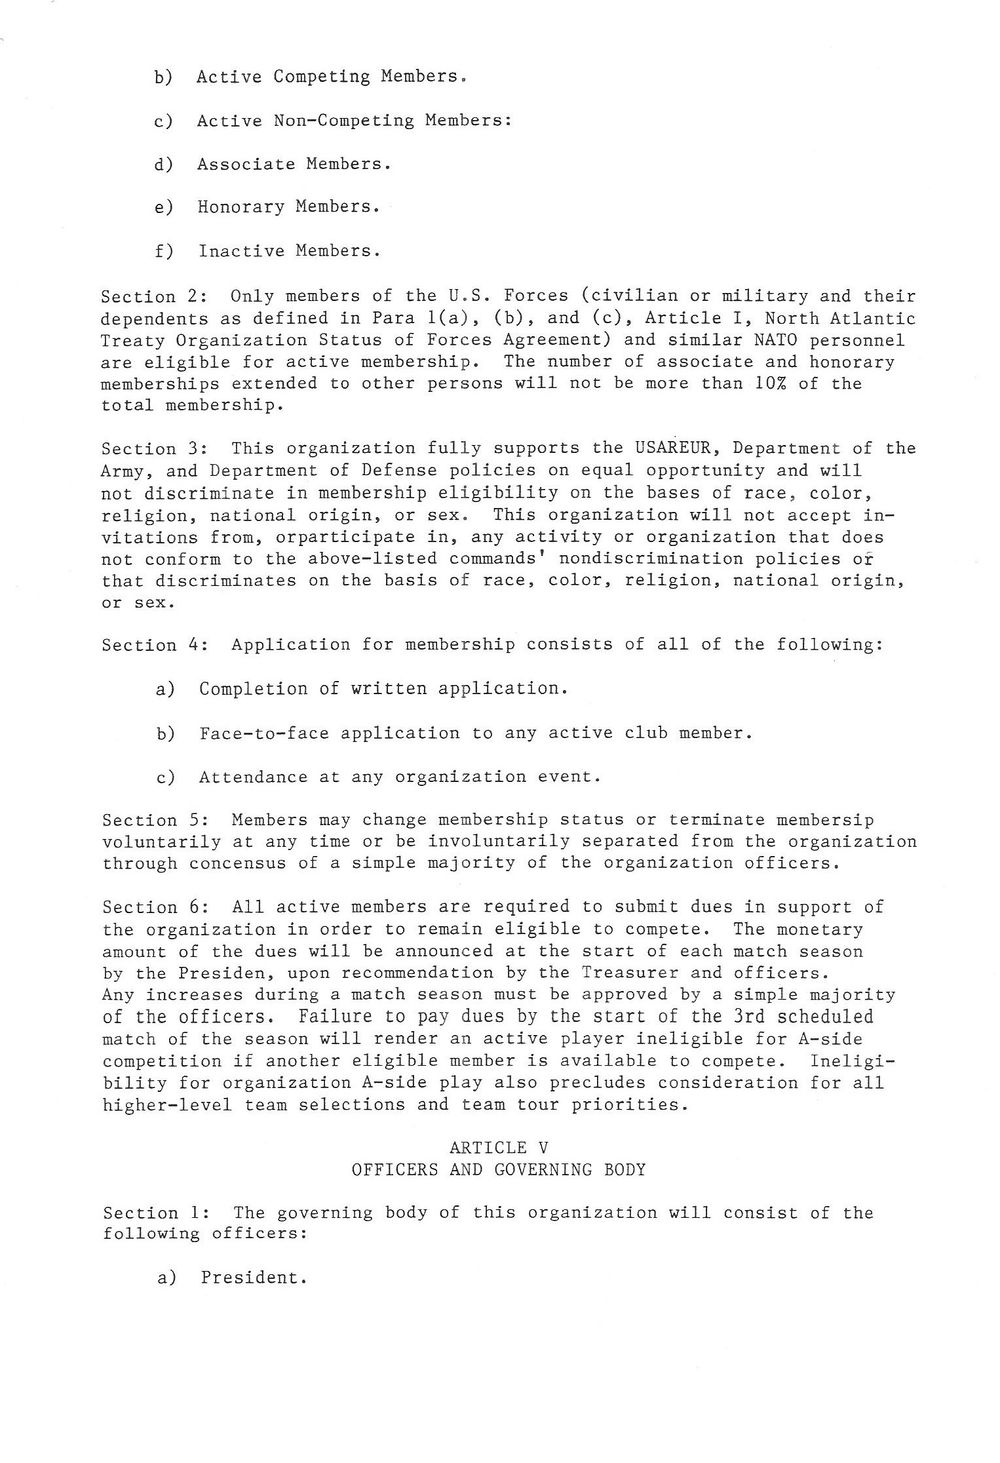 1989 Baumholder constitution 2.jpg